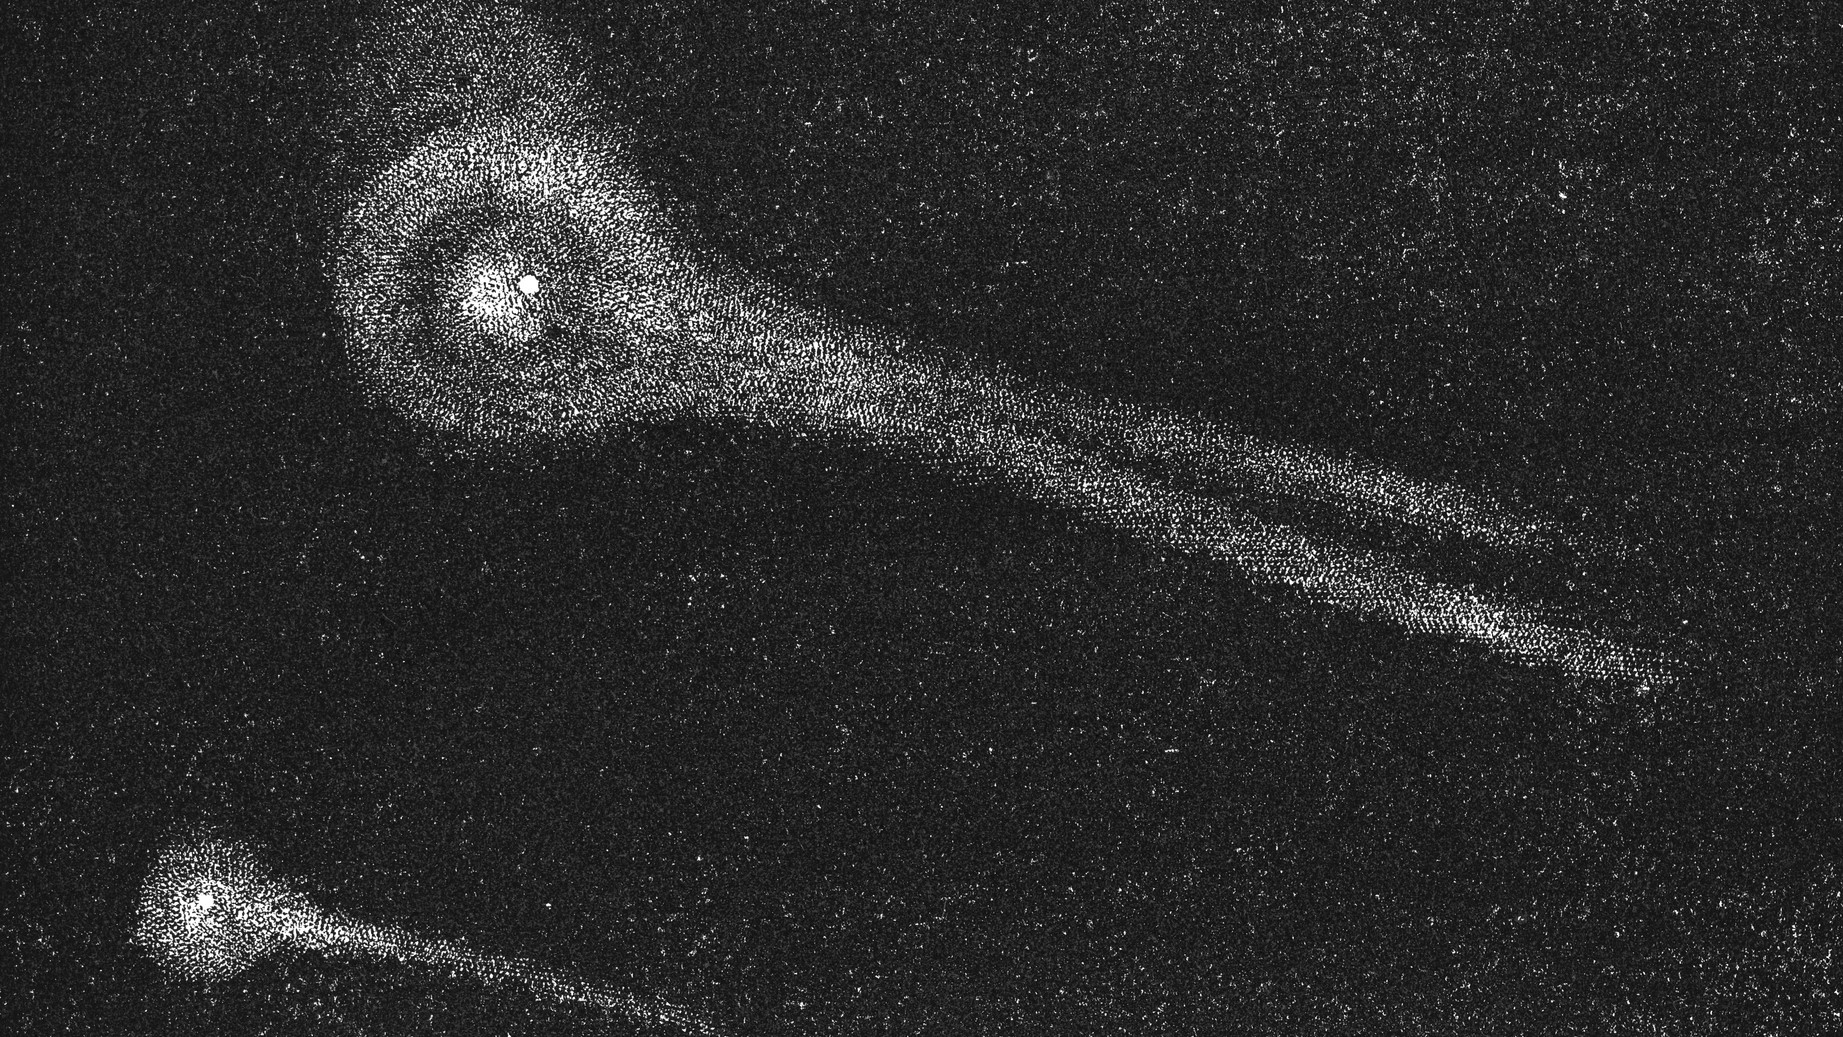 ビエラ彗星のイラストが刻印されています。